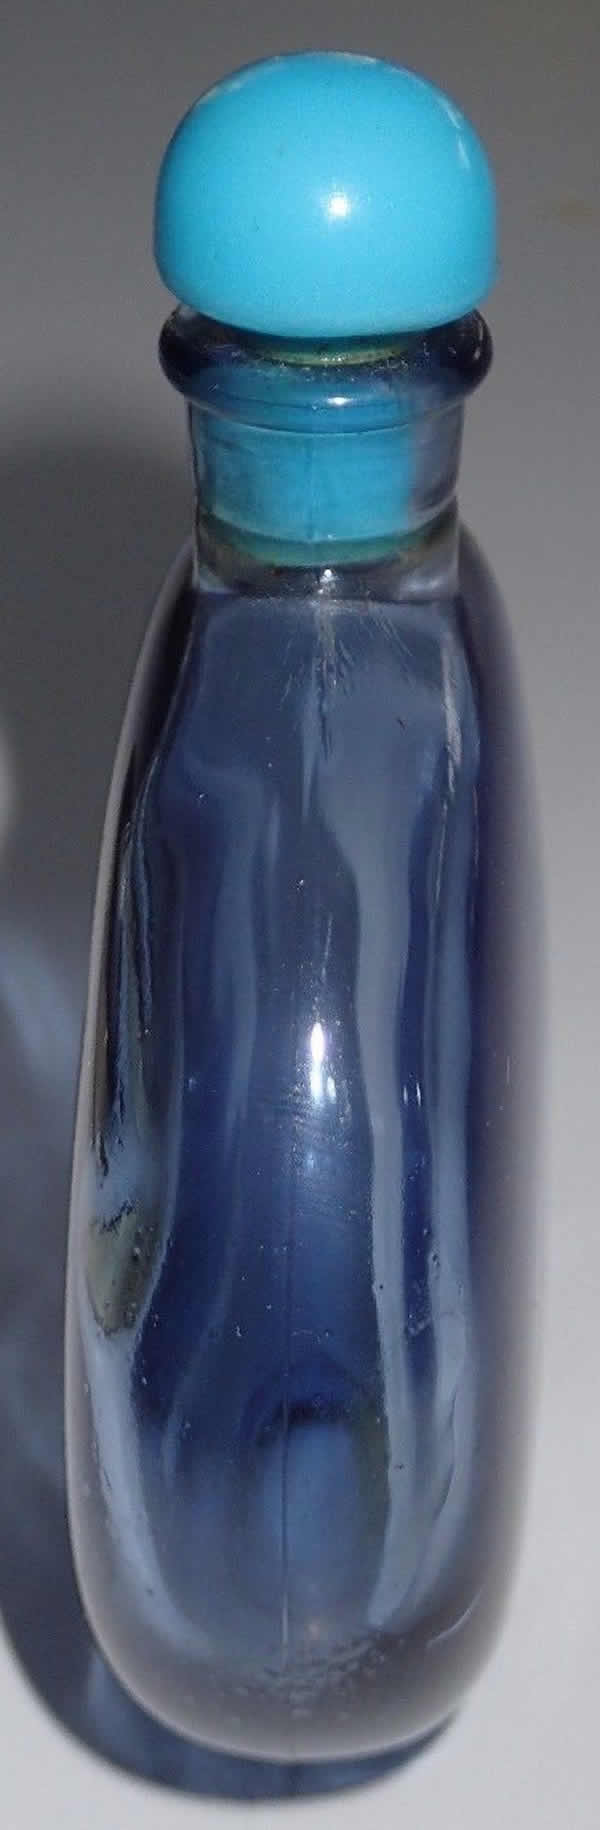 R. Lalique Je Reviens-9 Perfume Bottle